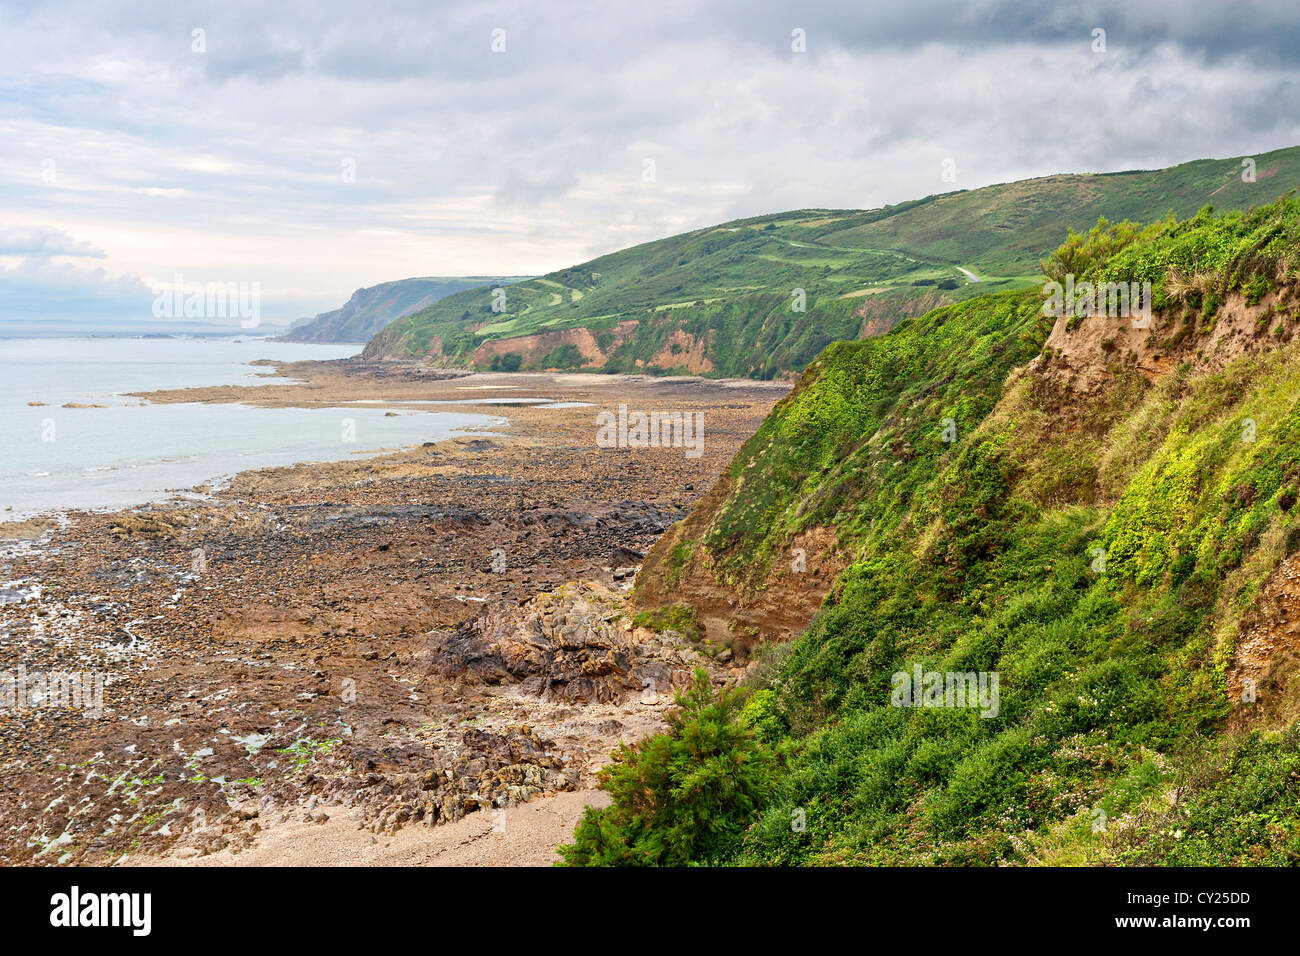 Paysage verdoyant sur la côte atlantique en Normandie, France Banque D'Images